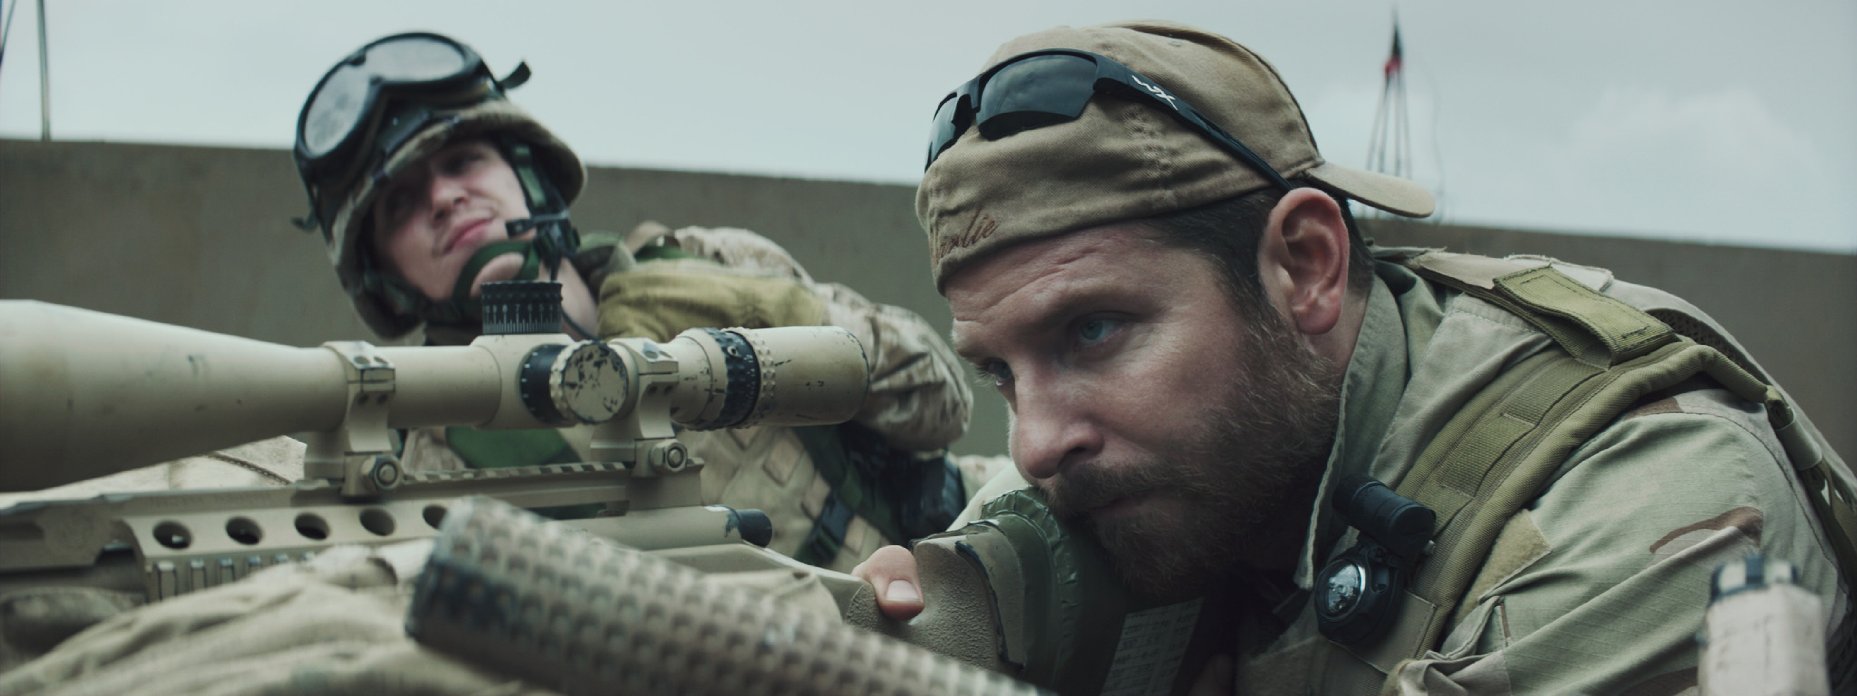 Keskin Nişancı / American Sniper (2014)